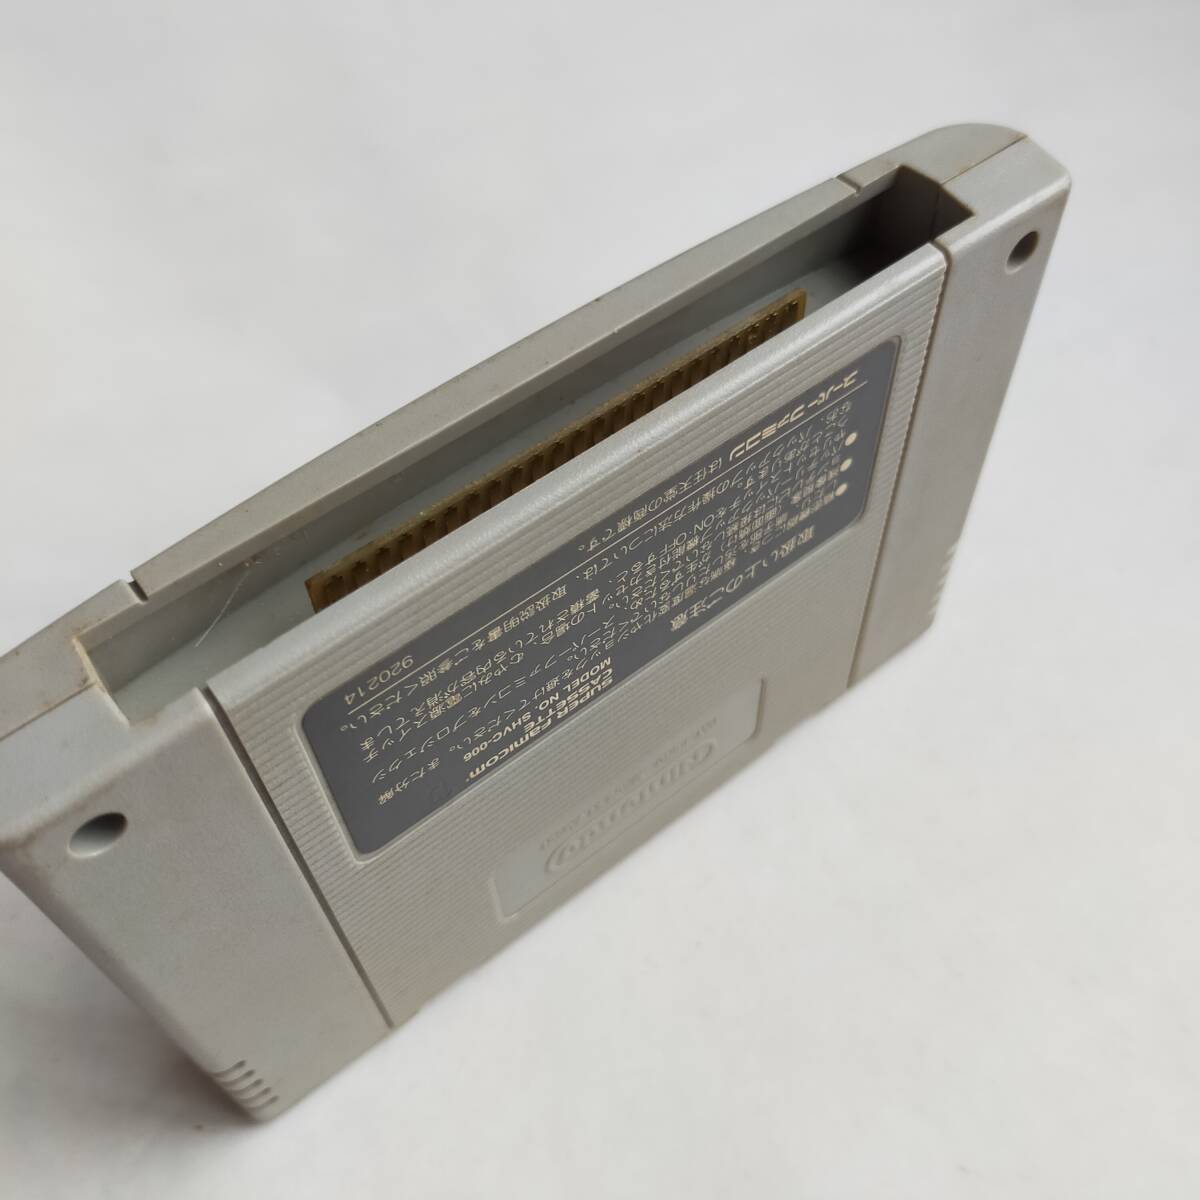  серп кама .... ночь Super Famicom рабочее состояние подтверждено * терминал чистка settled [SFC6494_412]